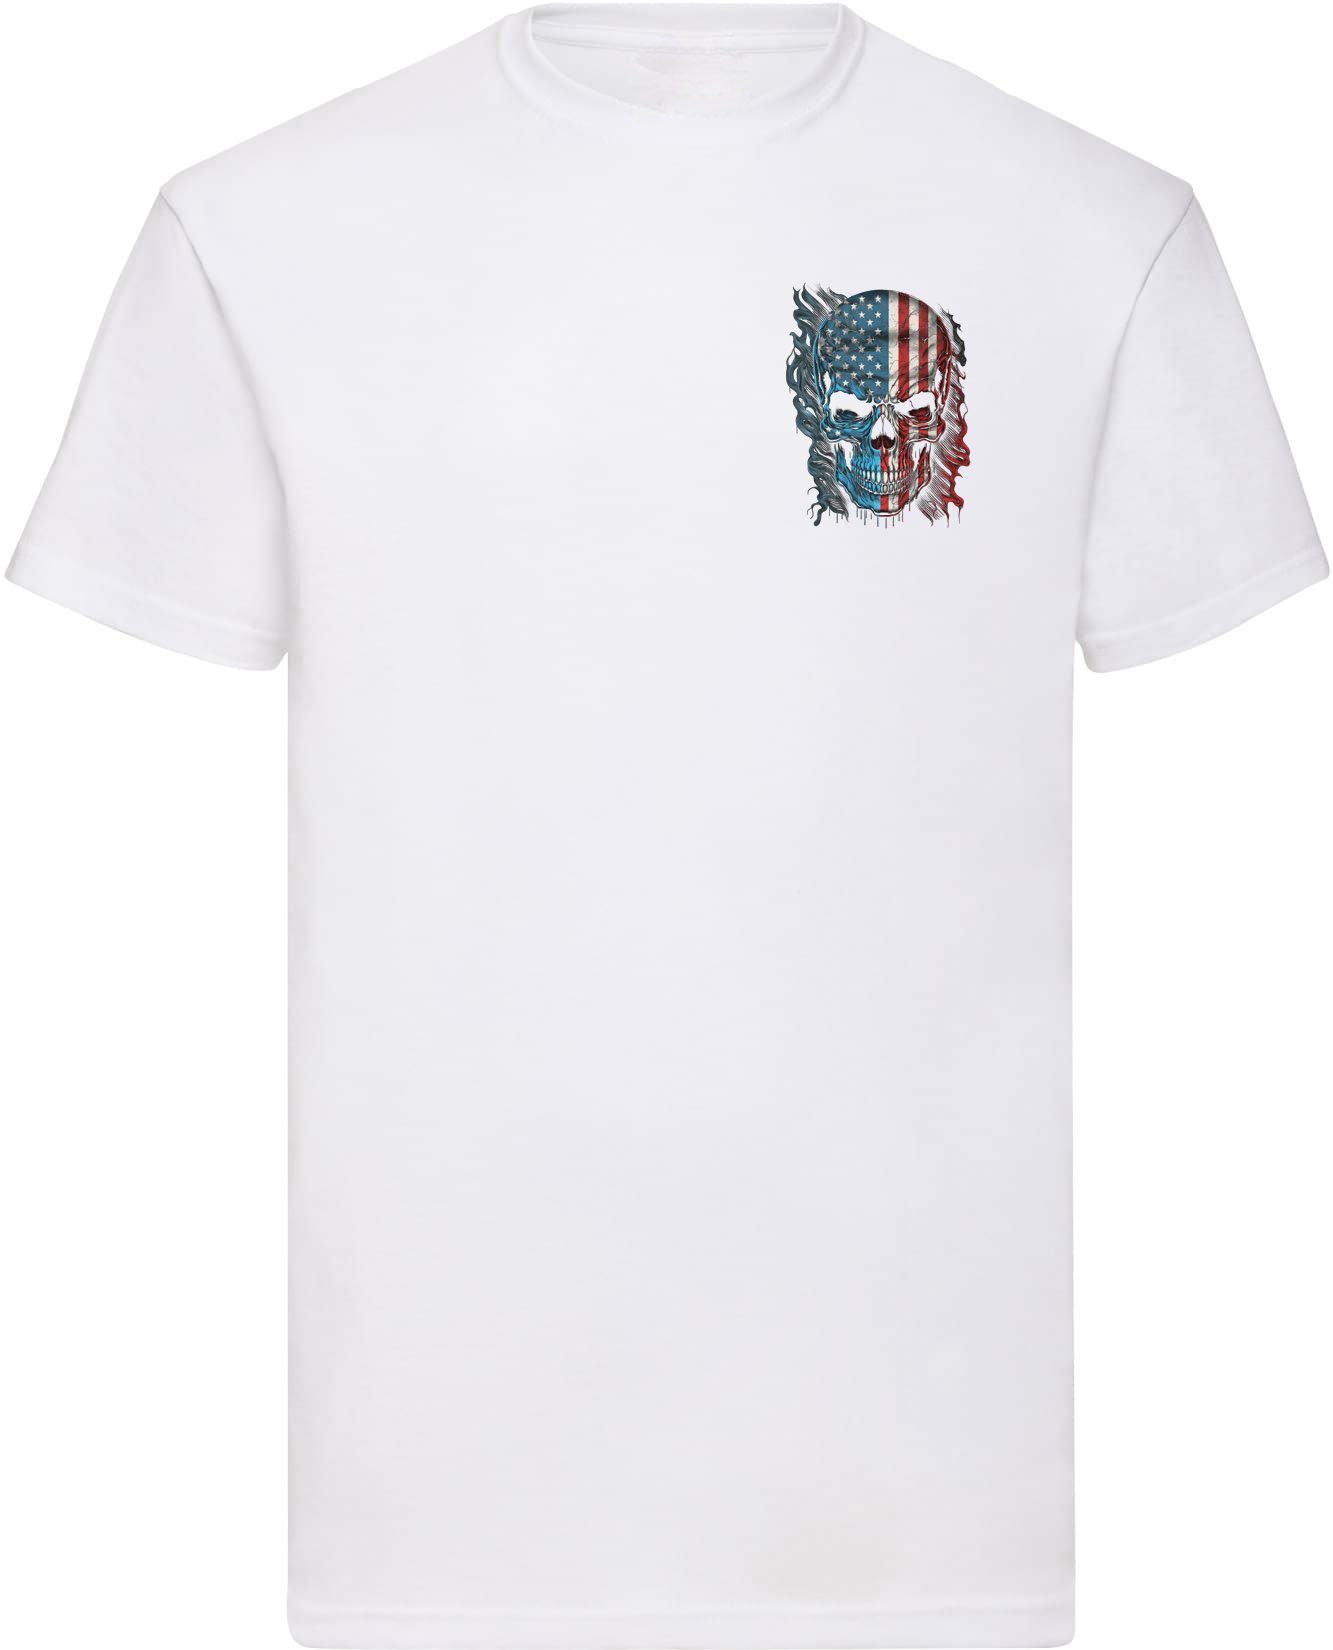 Banco T-Shirt Herren USA Totenkopf (39) mit Druck und 100% Baumwolle Print, 100% Baumwolle, Rundhals Weiß o.r.kl.